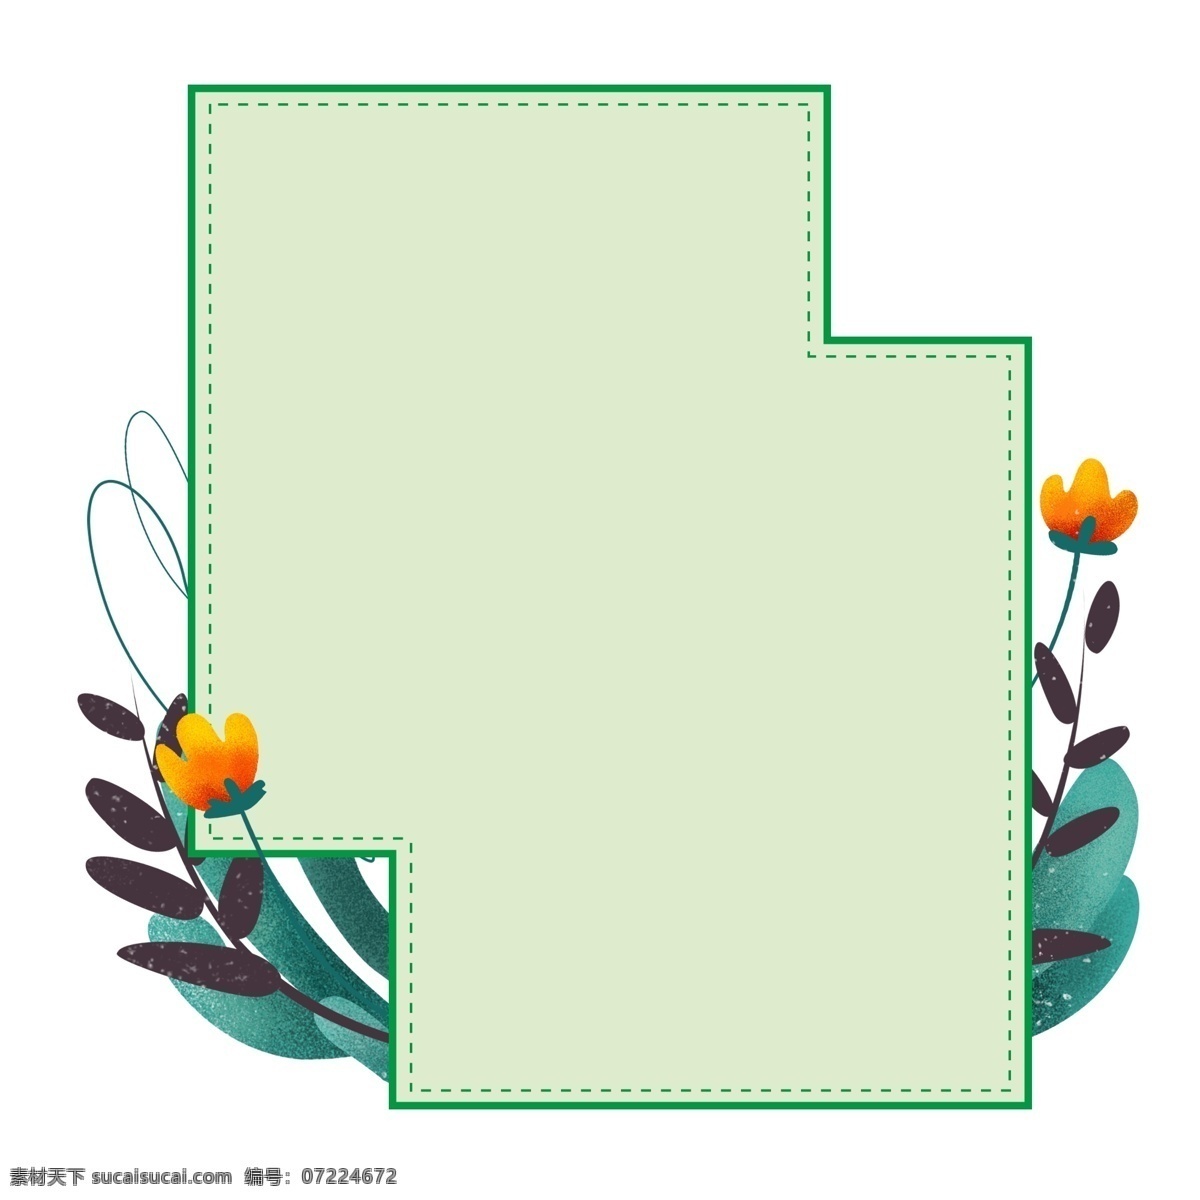 小 清新 绿色植物 边框 几何图形 矩形 不规则图形 绿色边框 植物 手绘 花 春天 植物边框 海报边框 绿植 绿色 小清新